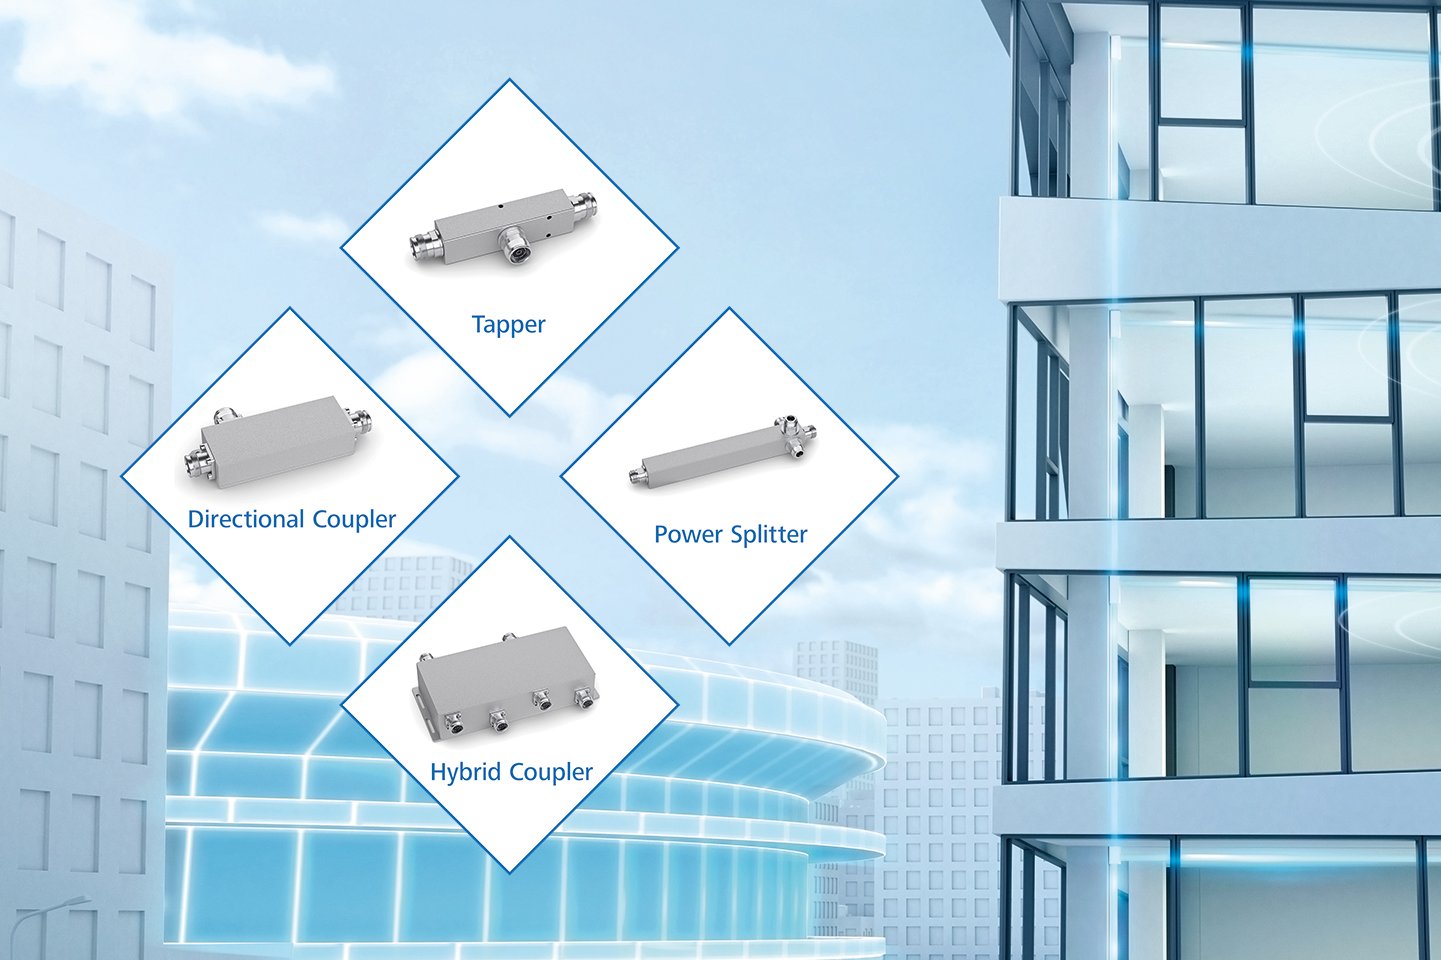 Tapper, power splitter, hybrid coupler, directional coupler for multi-storey buildings